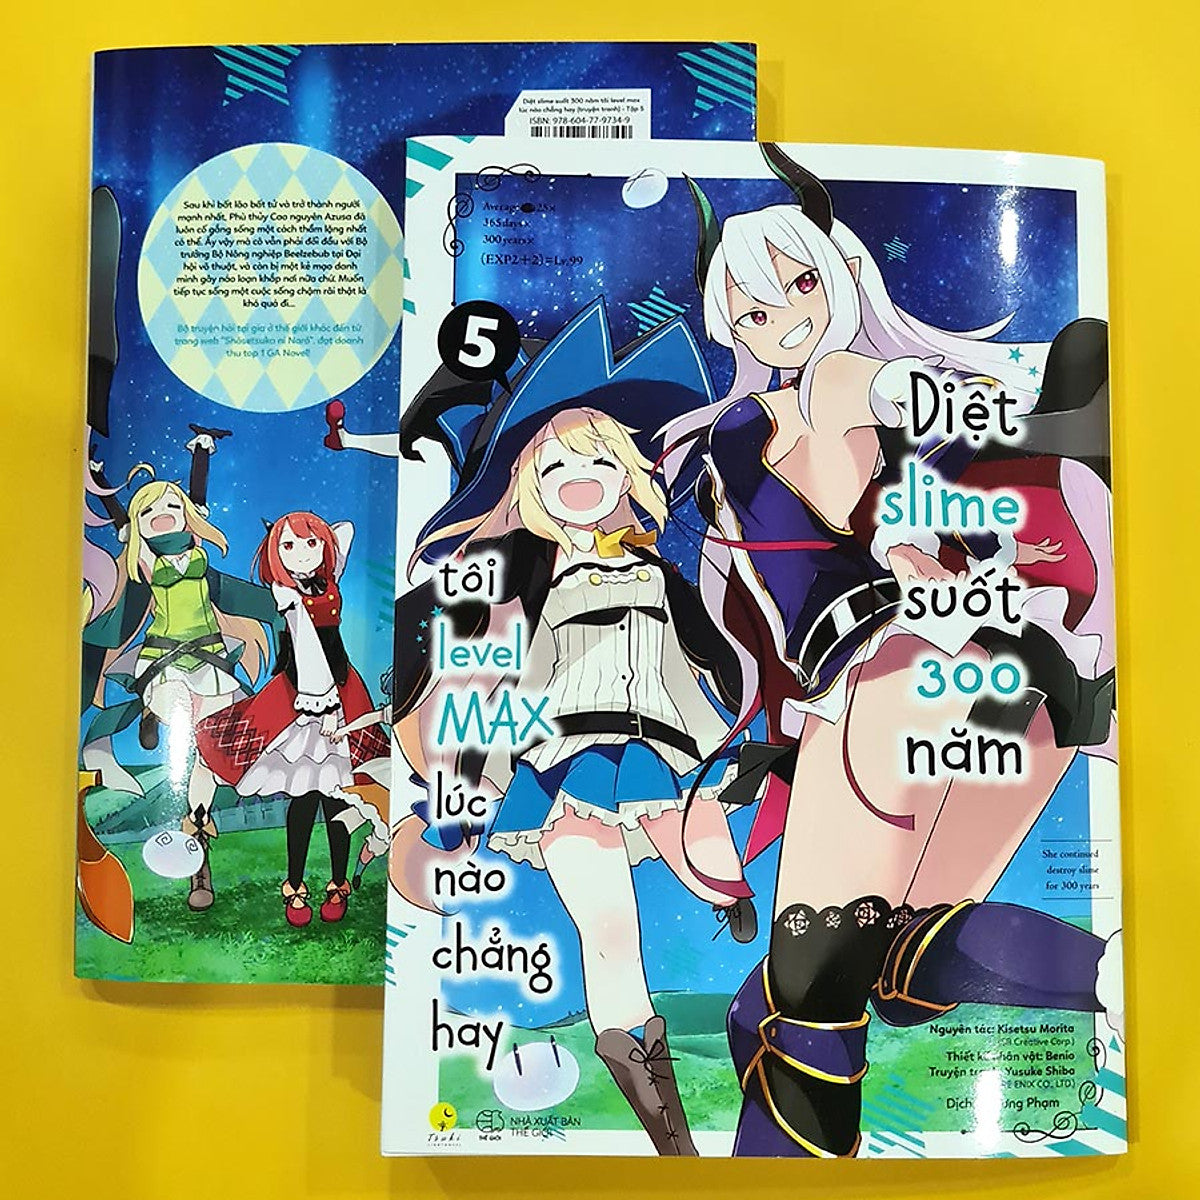 Manga Diệt Slime Suốt 300 Năm, Tôi Levelmax Lúc Nào Chẳng Hay - Tập 5